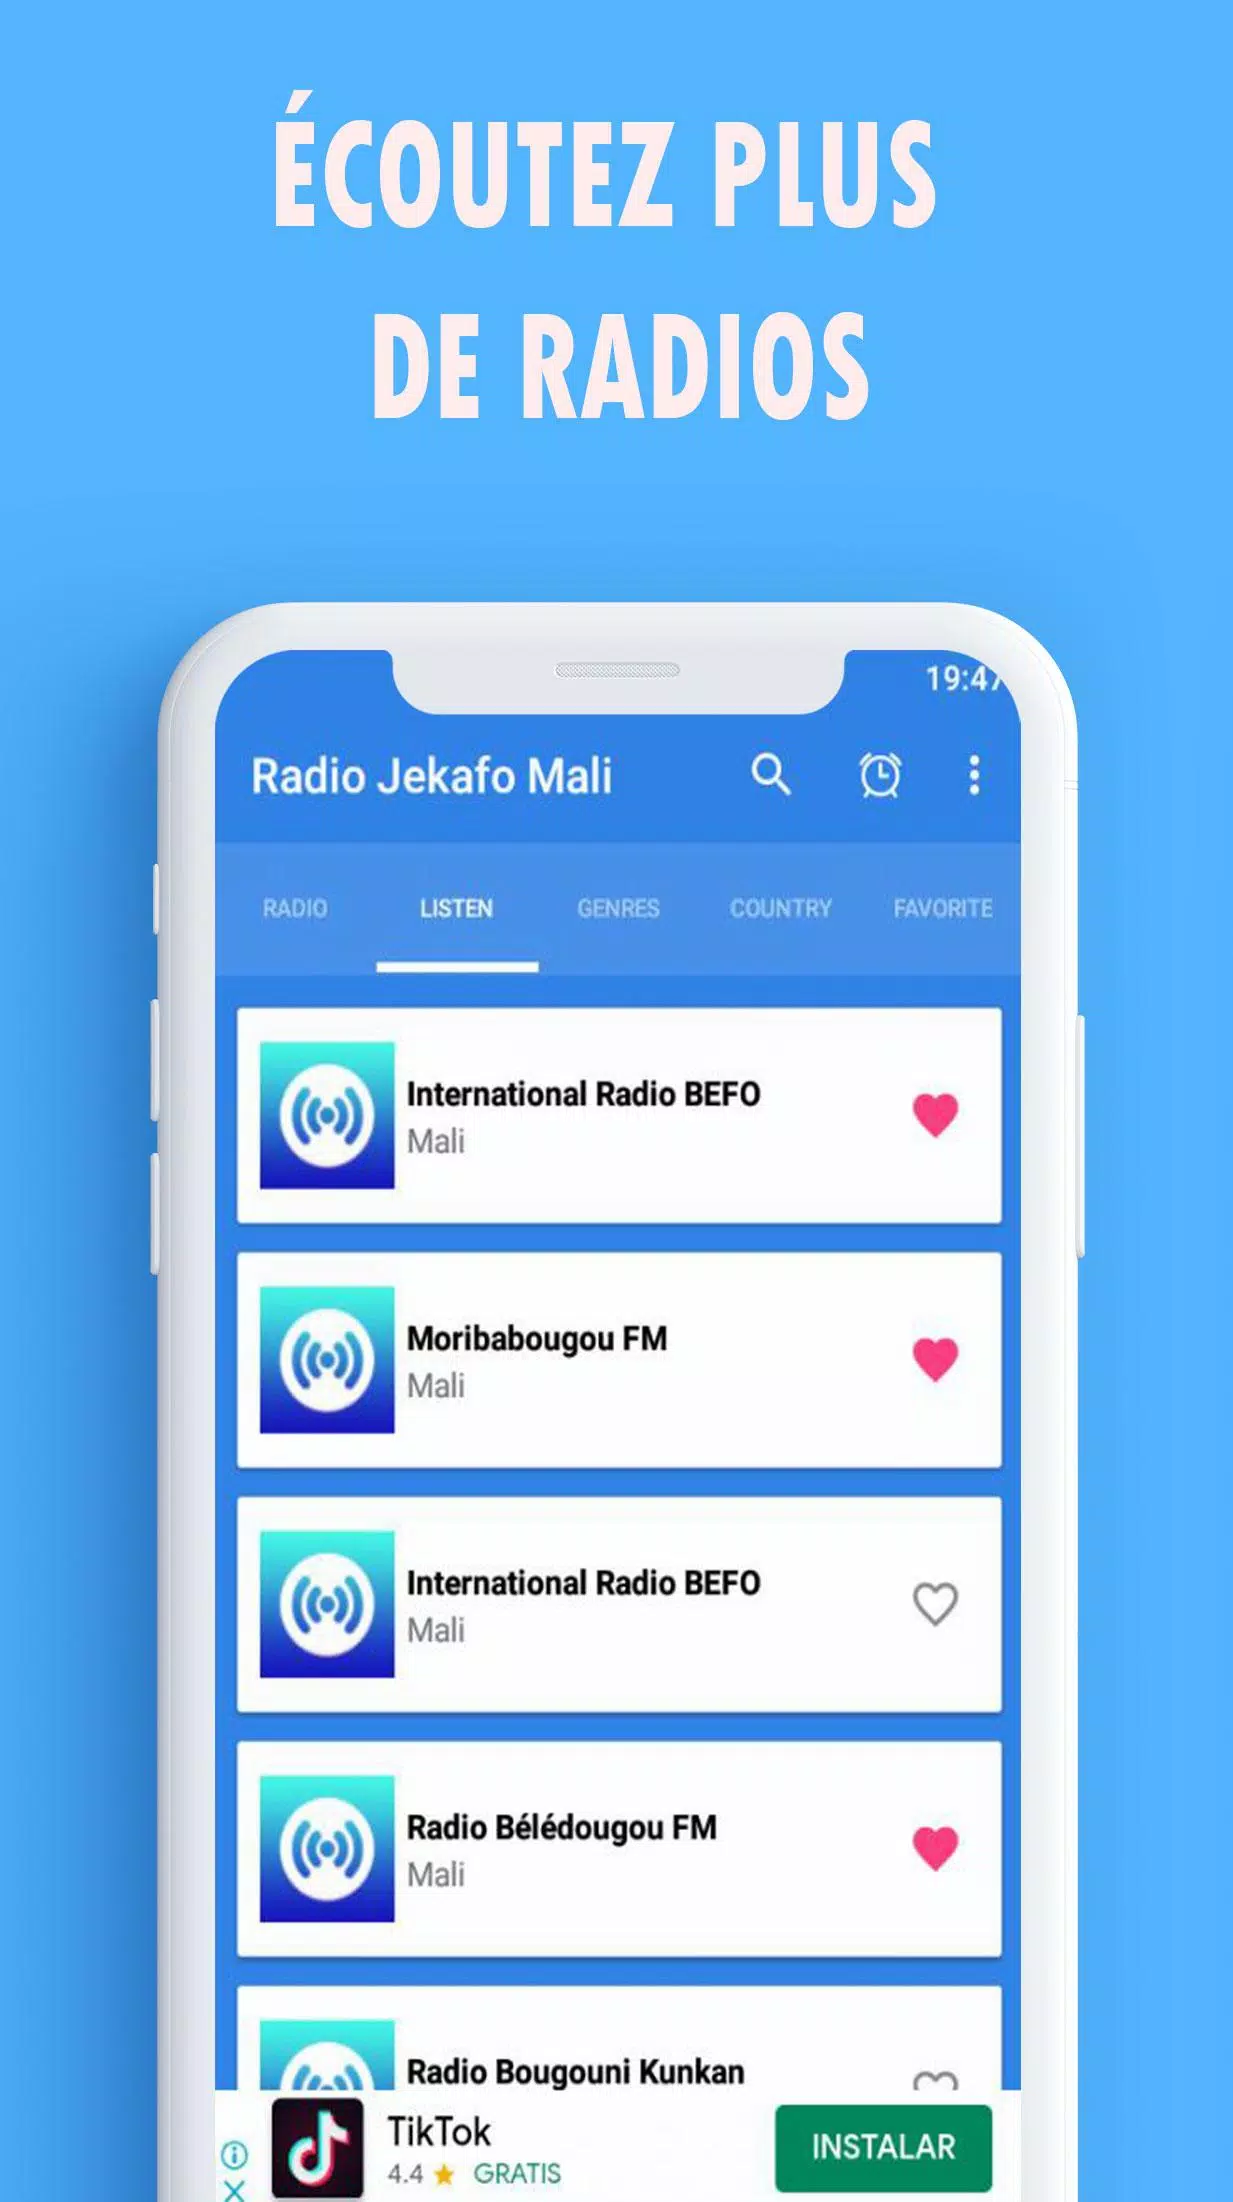 Descarga de APK de radio jekafo mali en ligne para Android